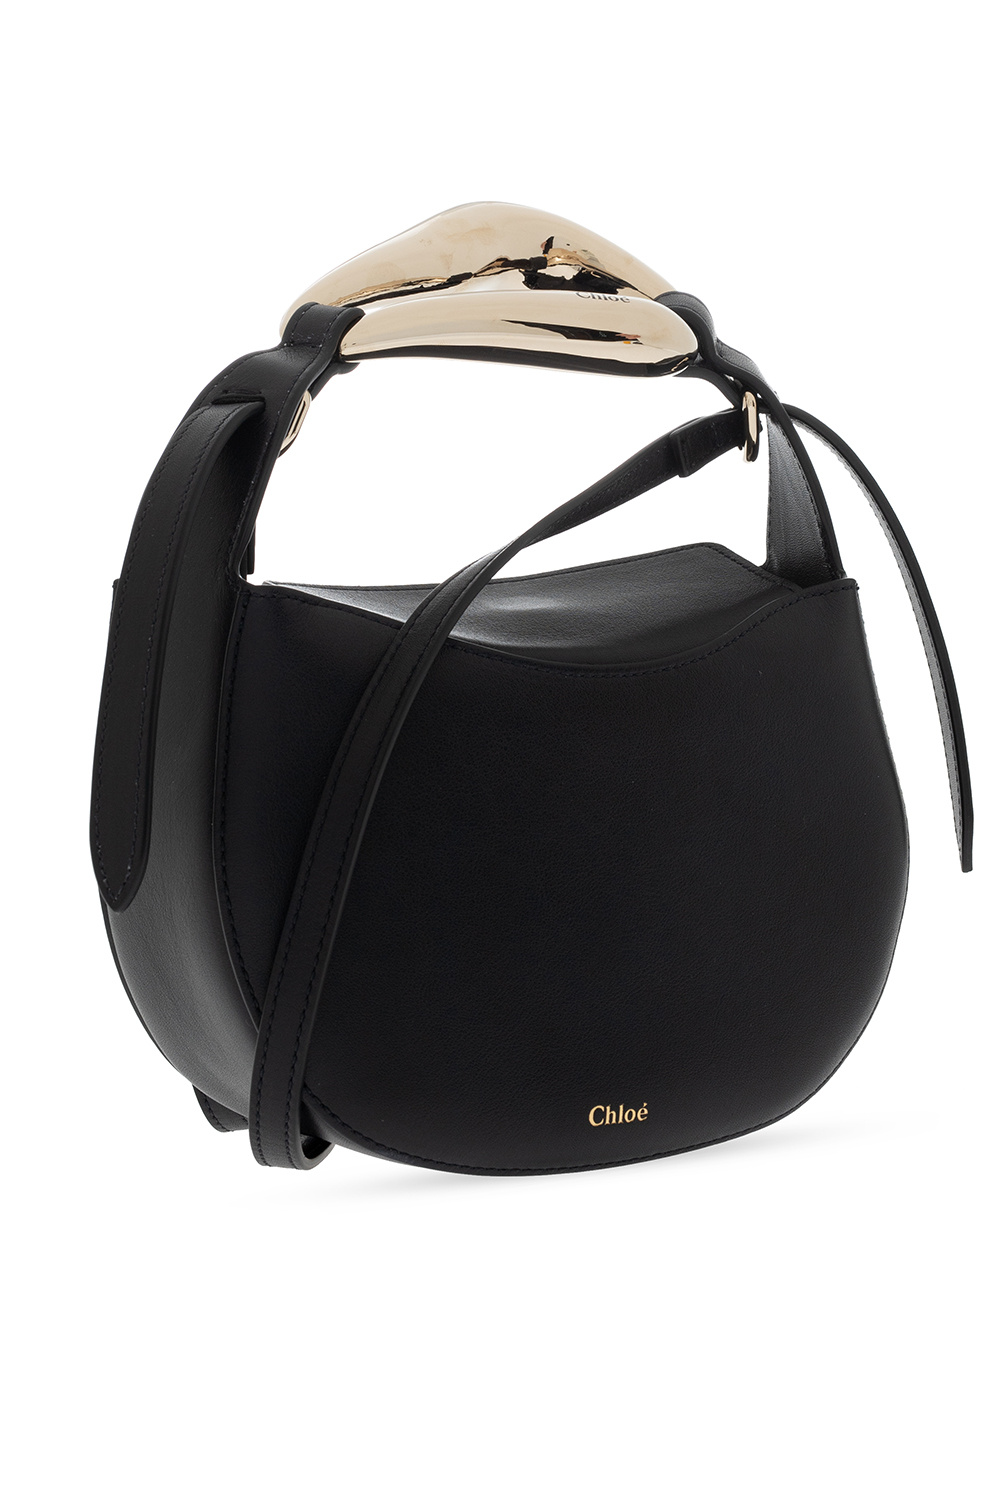 Chloé 'Kiss' shoulder bag | Women's Bags | IetpShops